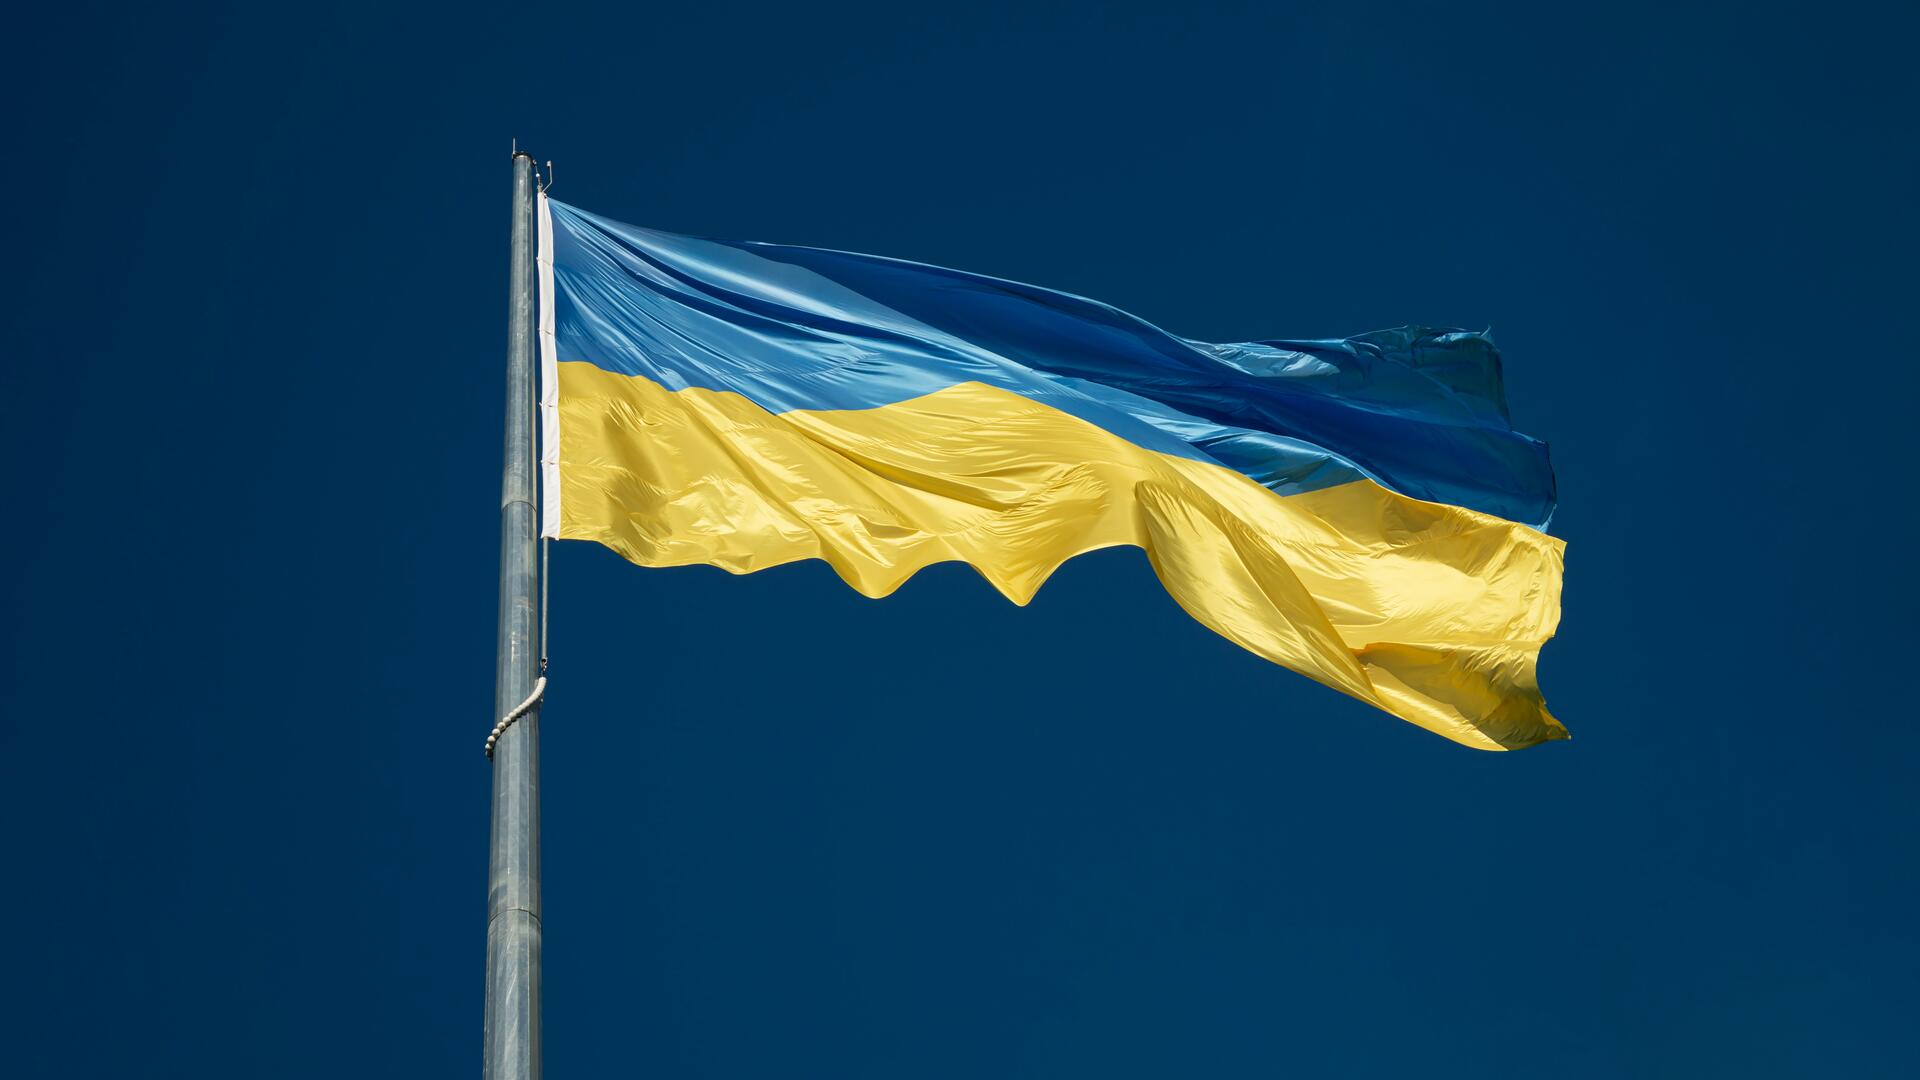 Ukrainen sini-keltainen lippu liehuu salossa.